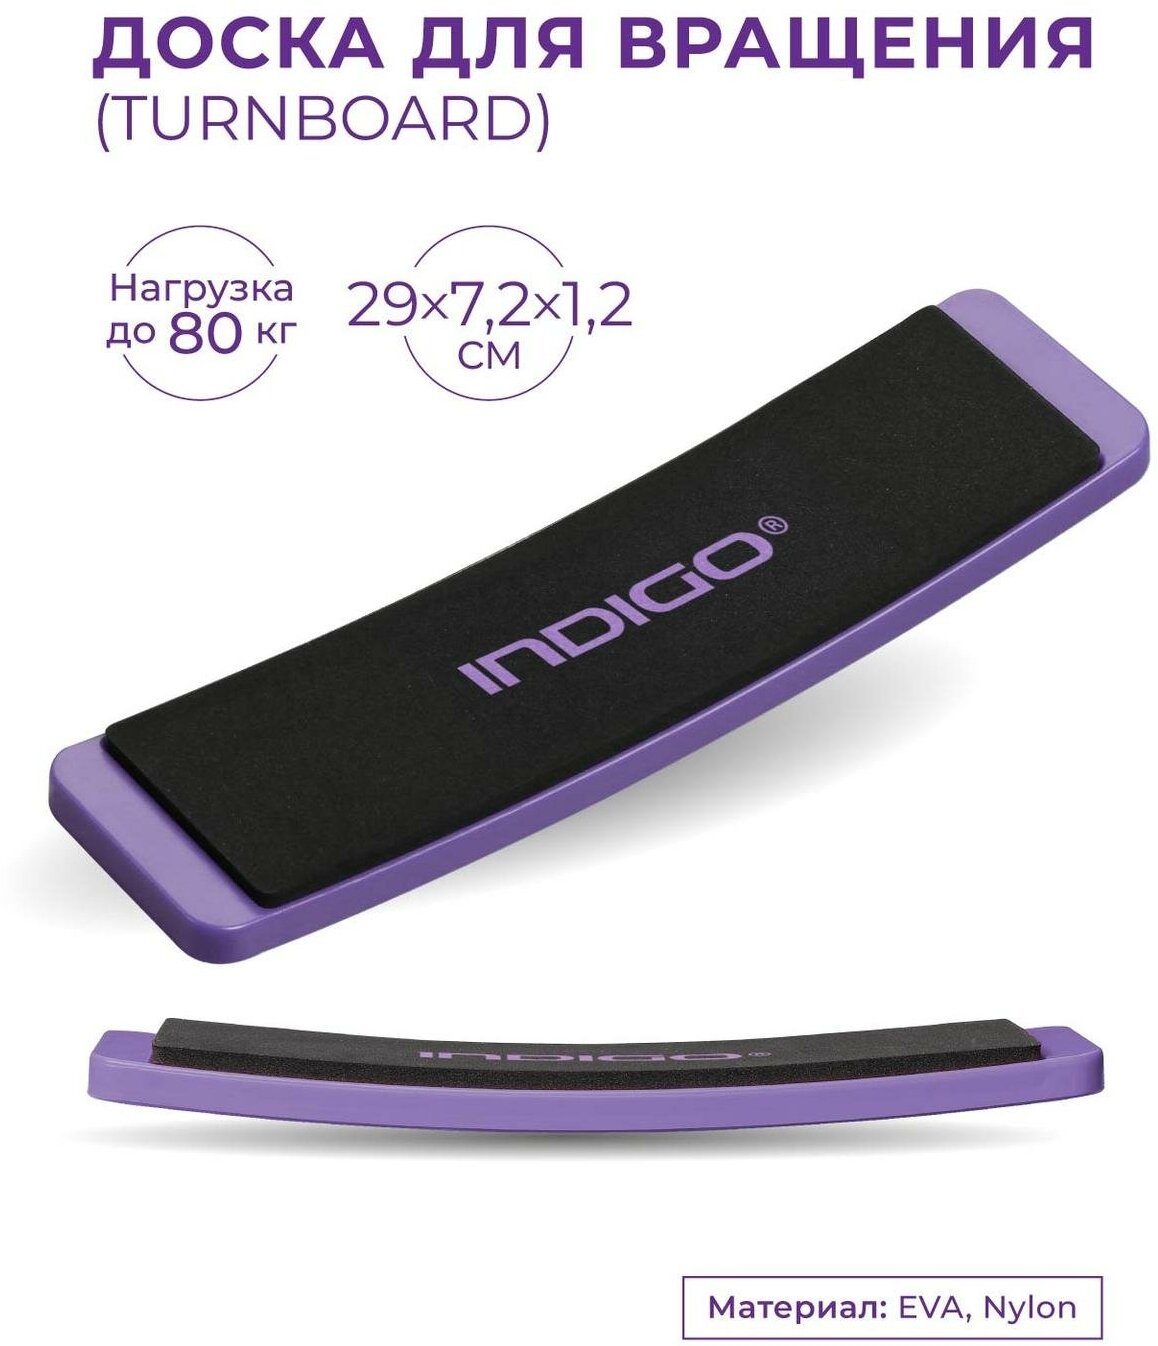 Доска для вращения (TURNBOARD) INDIGO Фиолетовый